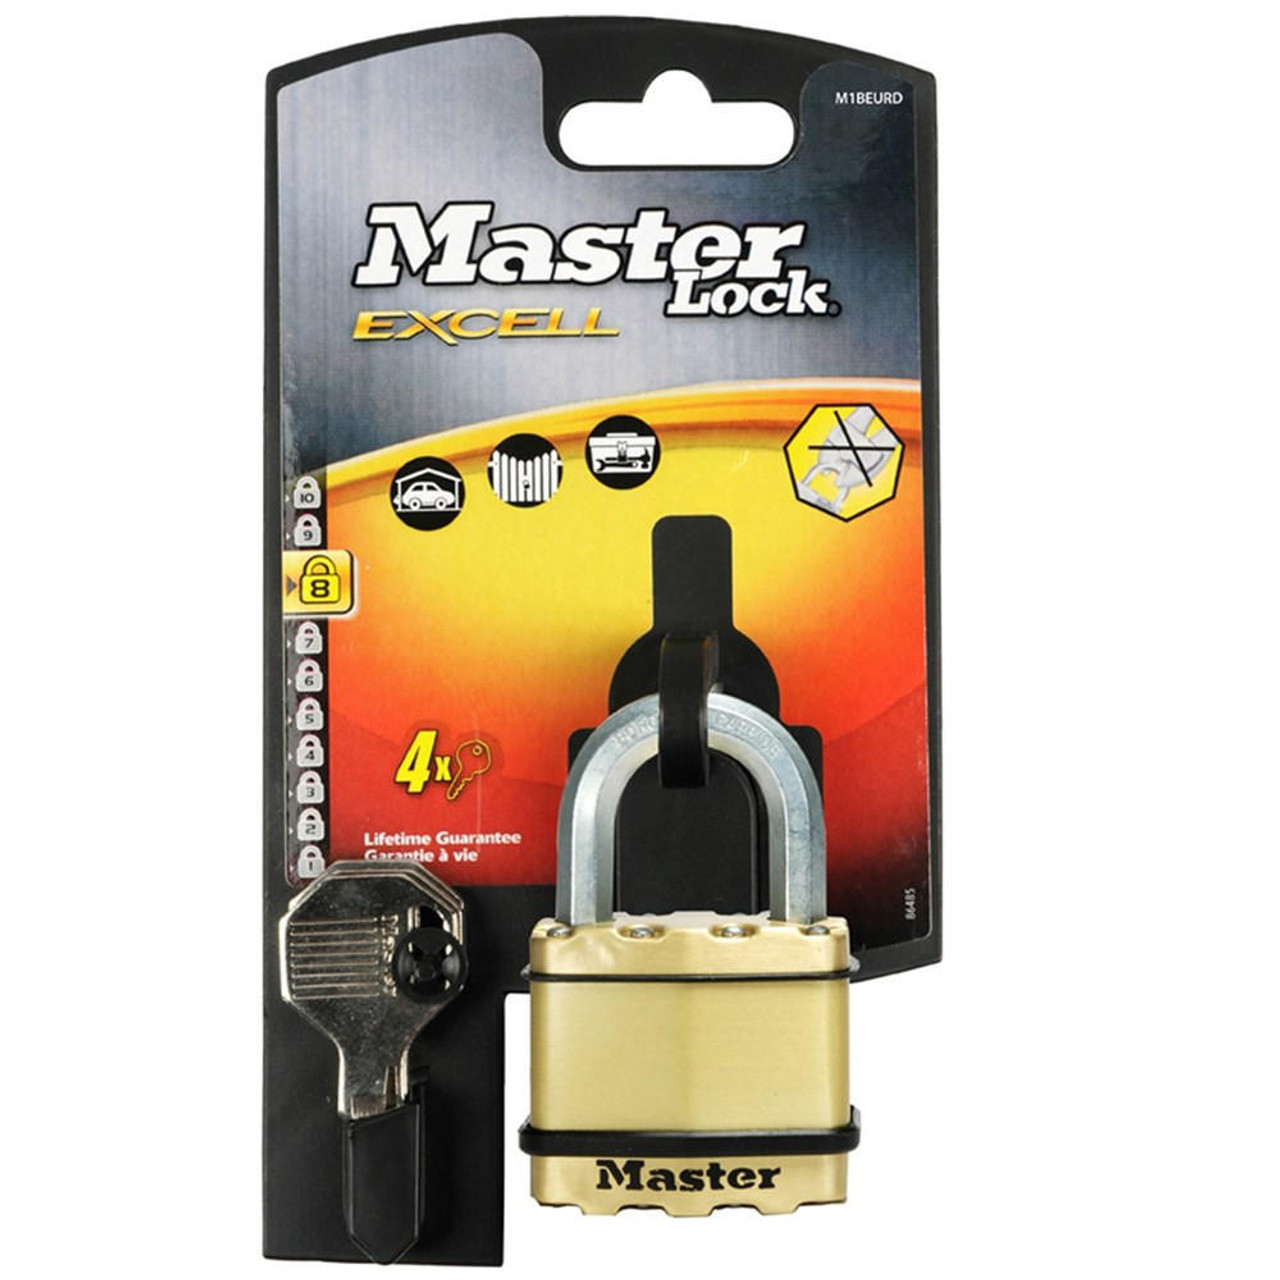 Master Lock Master Excell Padlock 24mm Shackel - M1BDAU